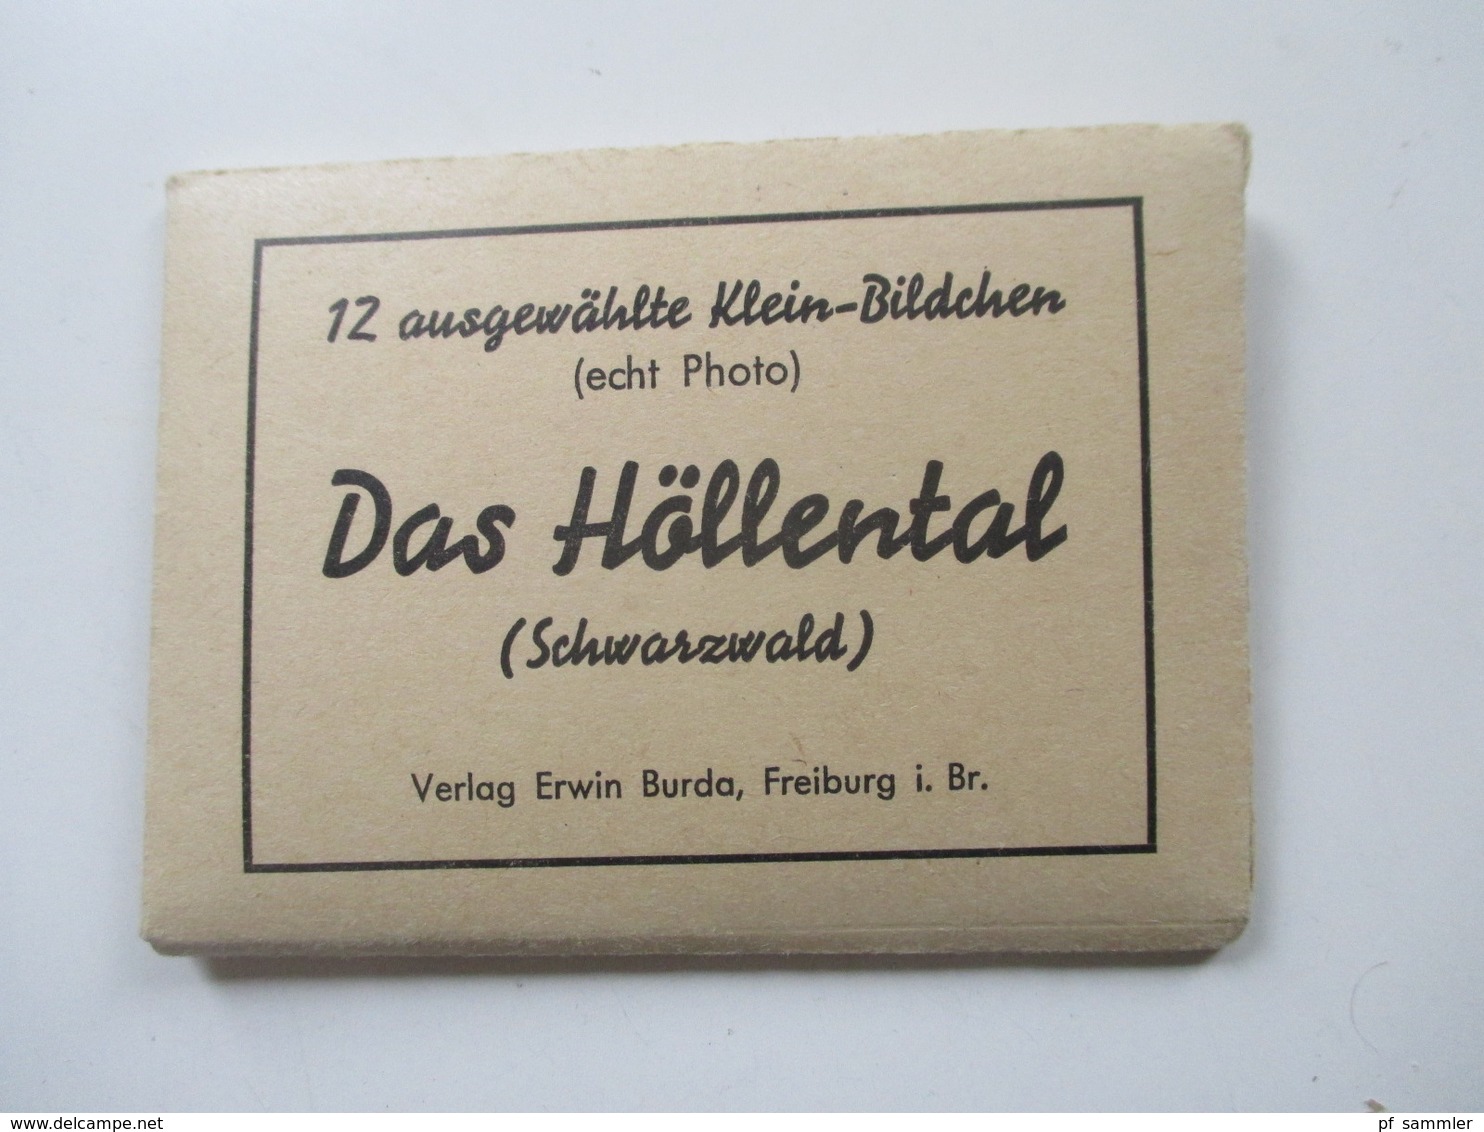 40 Leporellos kleine Fotos 1940 / 50er Jahre! Deutschland / Italien / Österreich / Luxemburg usw. Interessanter Posten!!